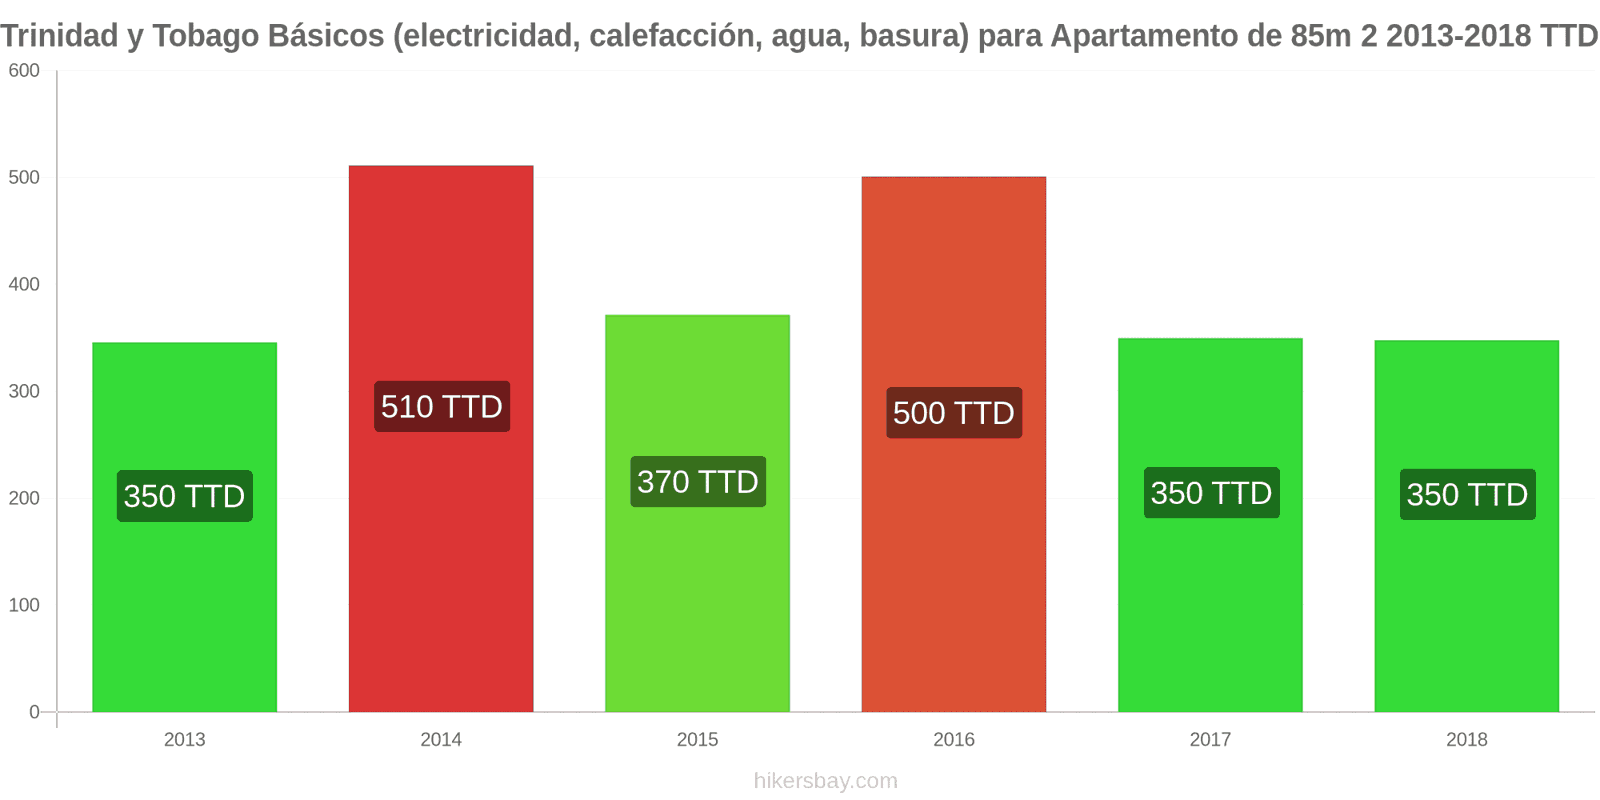 Trinidad y Tobago cambios de precios Servicios (electricidad, calefacción, agua, basura) para un apartamento de 85m2 hikersbay.com